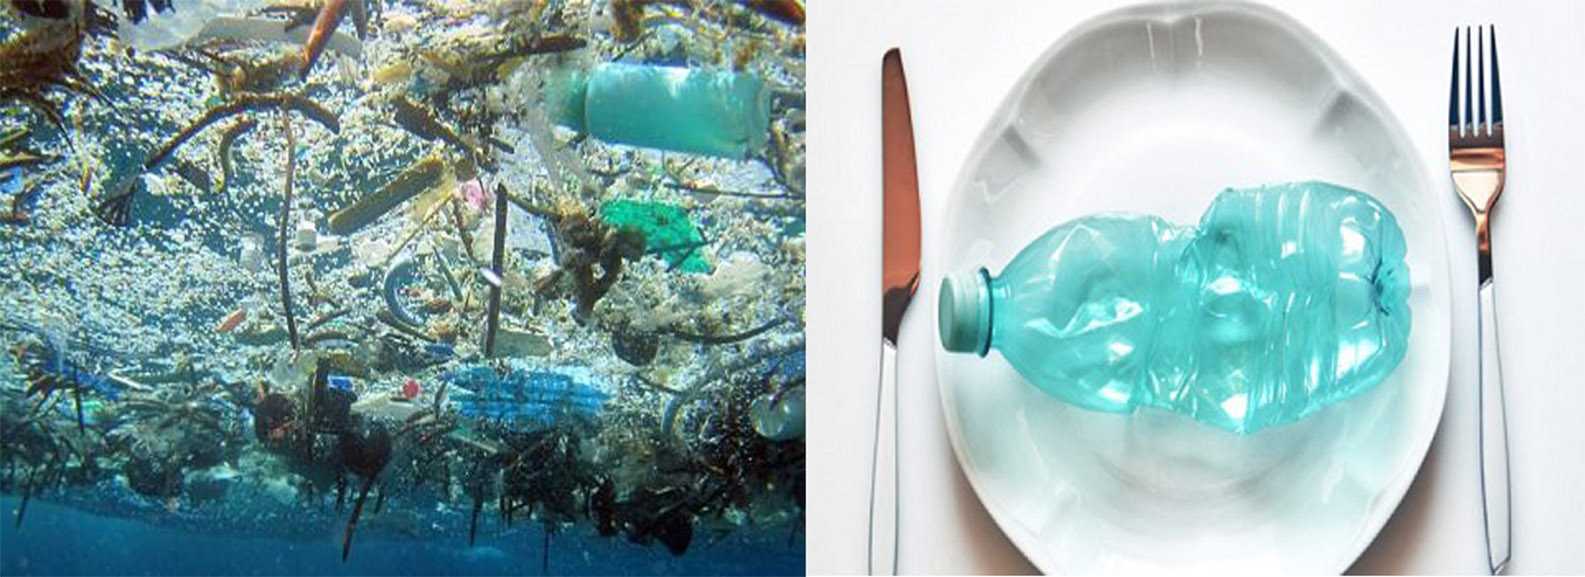 La microplastica nel sale da cucina, Greenpeace: “più del 90% dei campioni contaminato”